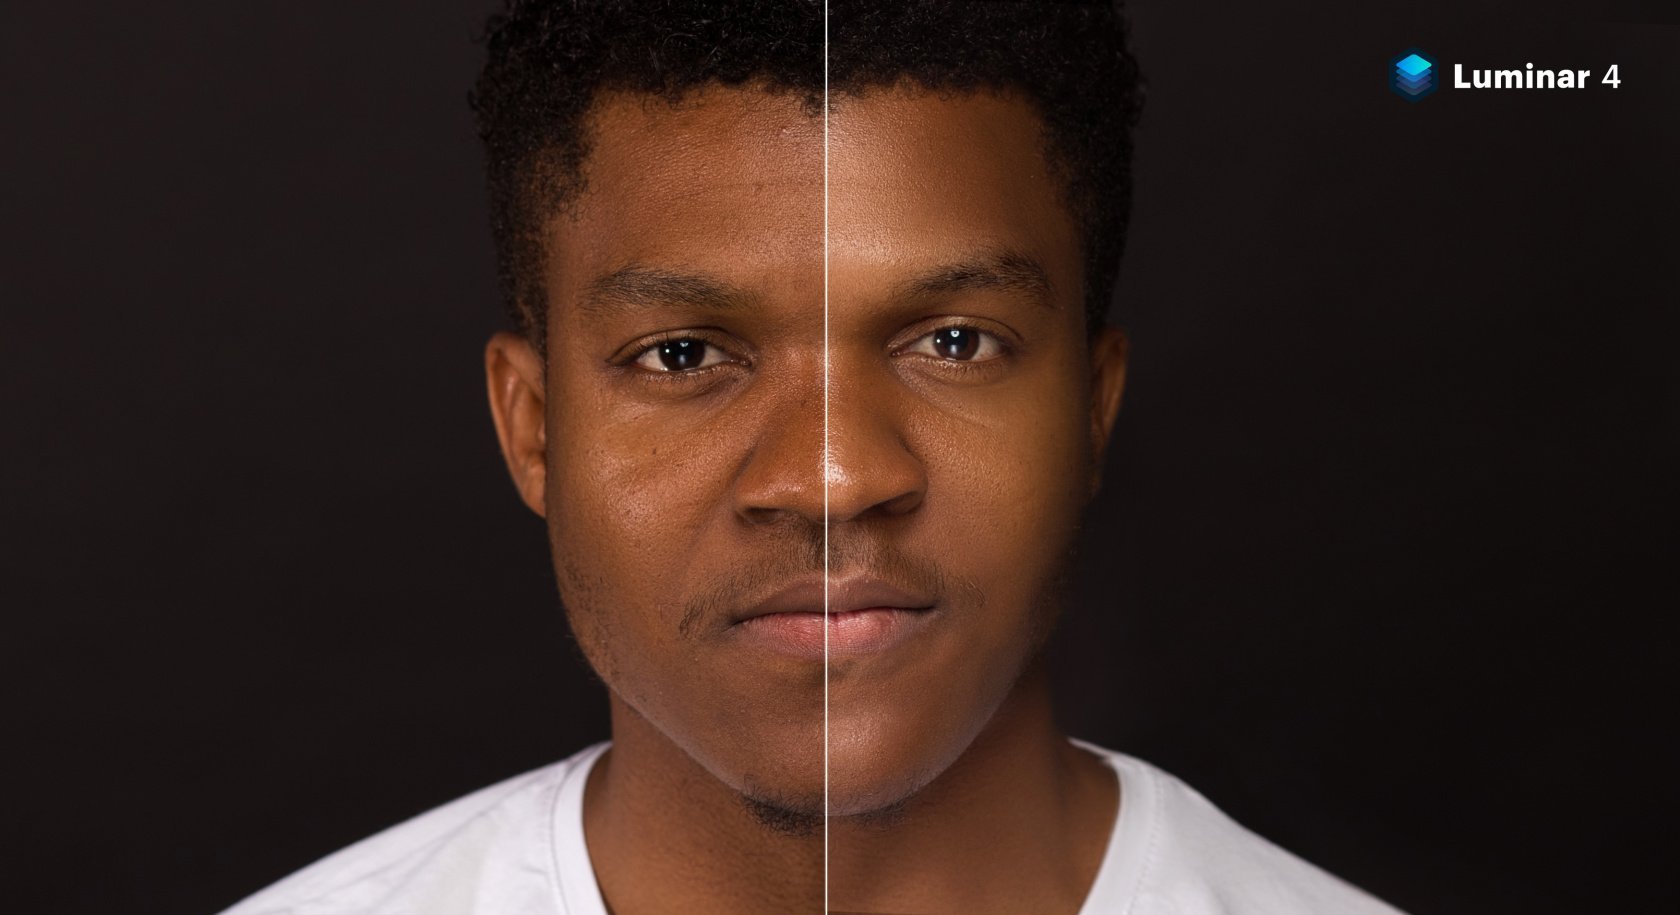 Faites briller vos portraits avec les nouveaux outils de Luminar 4 | Skylum Blog(4)